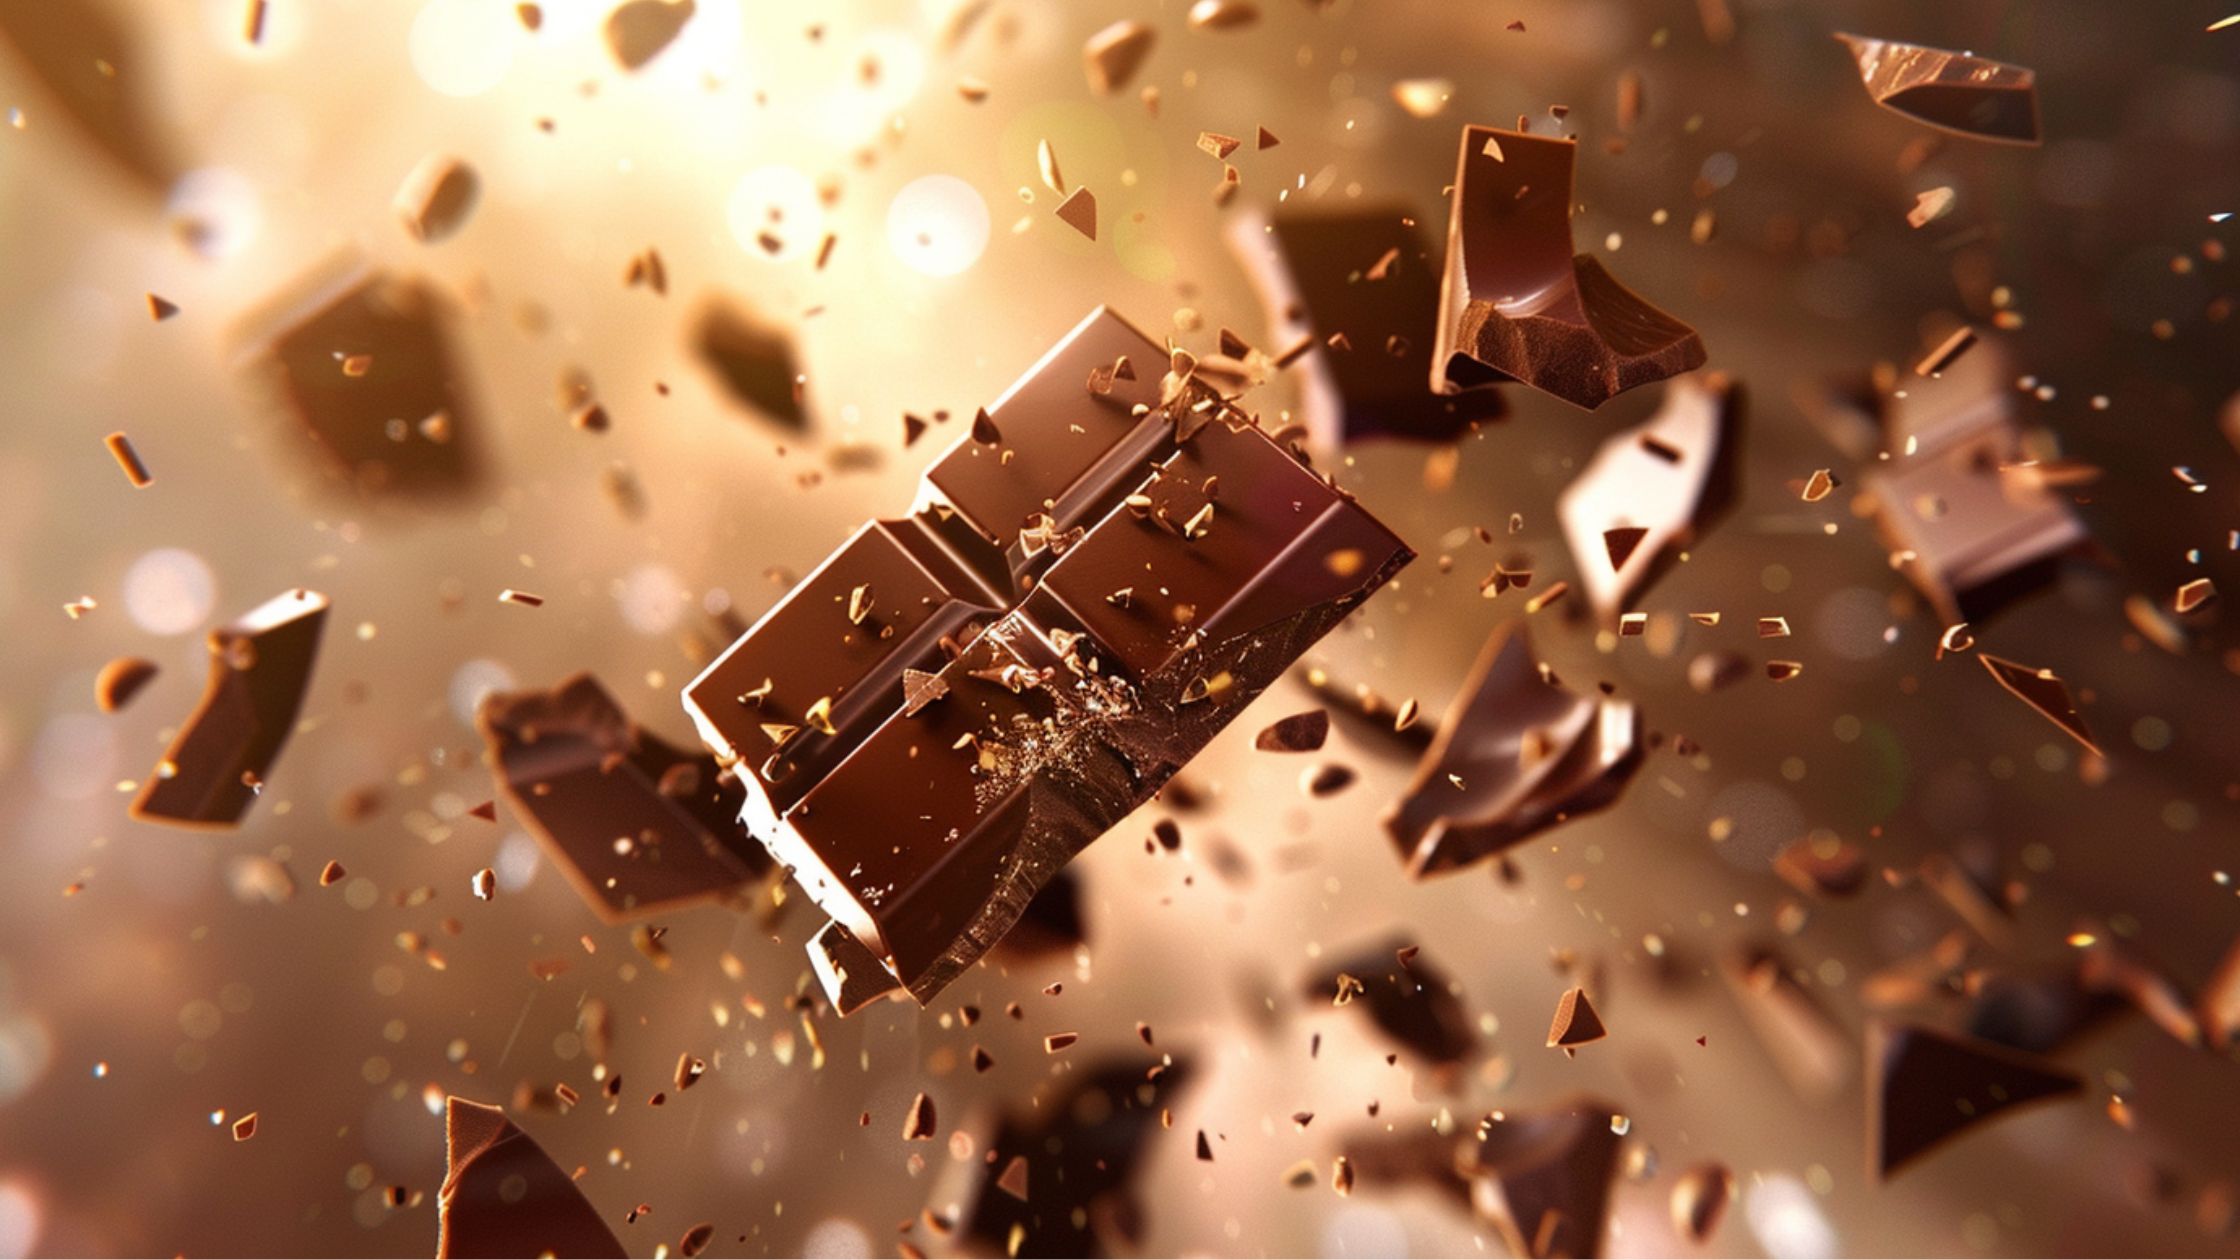 Třetina čokolád má vysoký obsah těžkých kovů, zjistily testy. Jak poznat tu kvalitní?